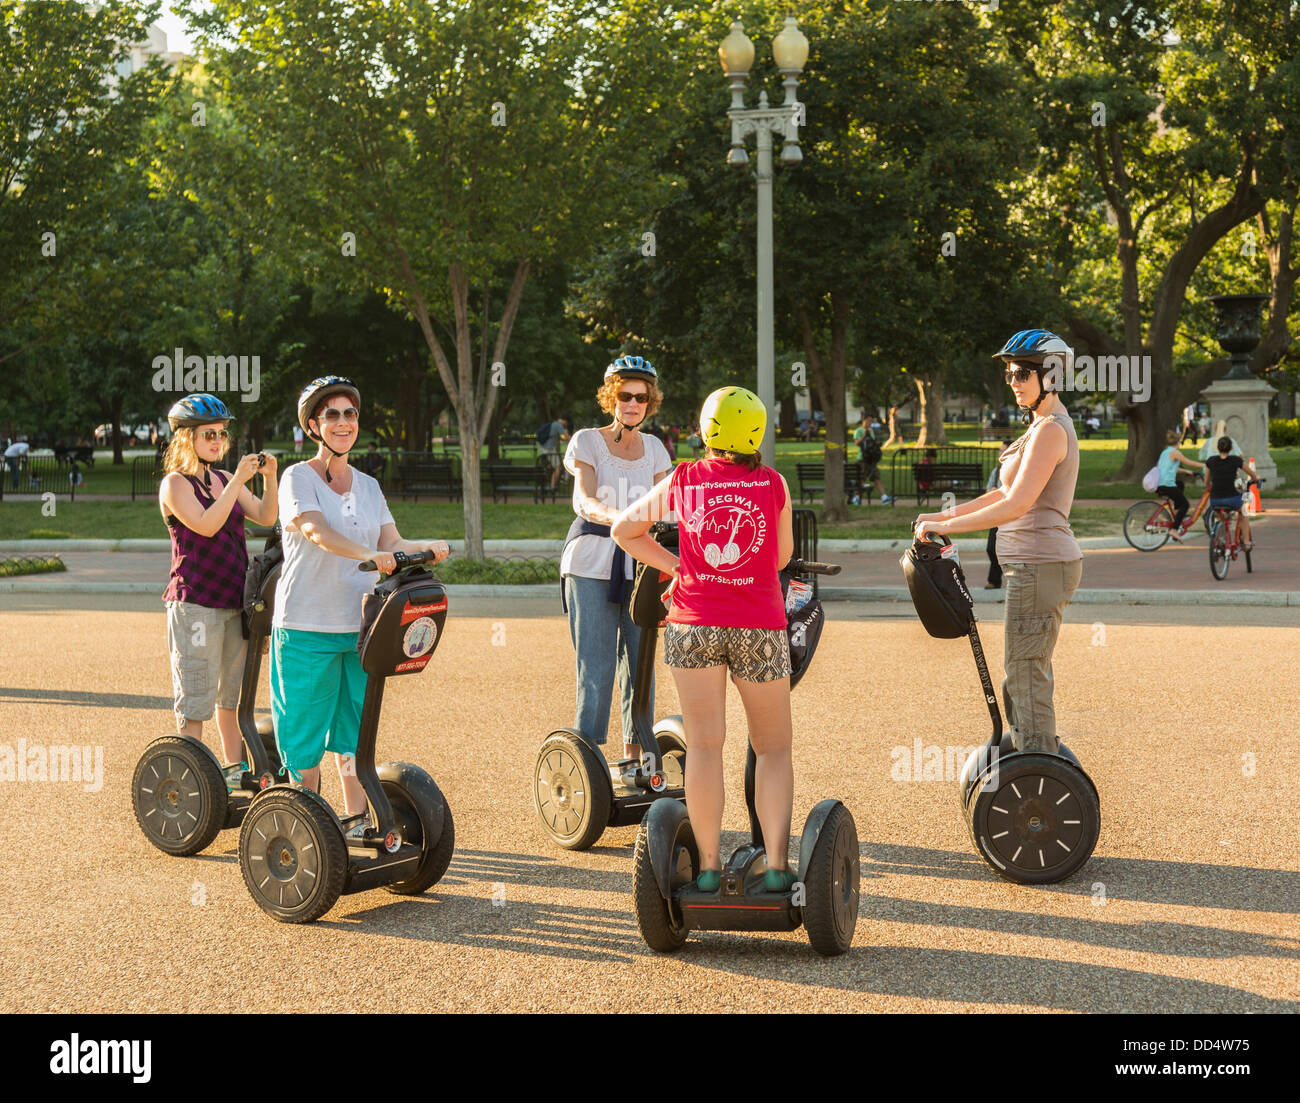 Gruppe von Touristen auf Segway-Fahrzeuge auf einer Gruppenreise auf Pennsylvania Avenue, Washington DC Stockfoto